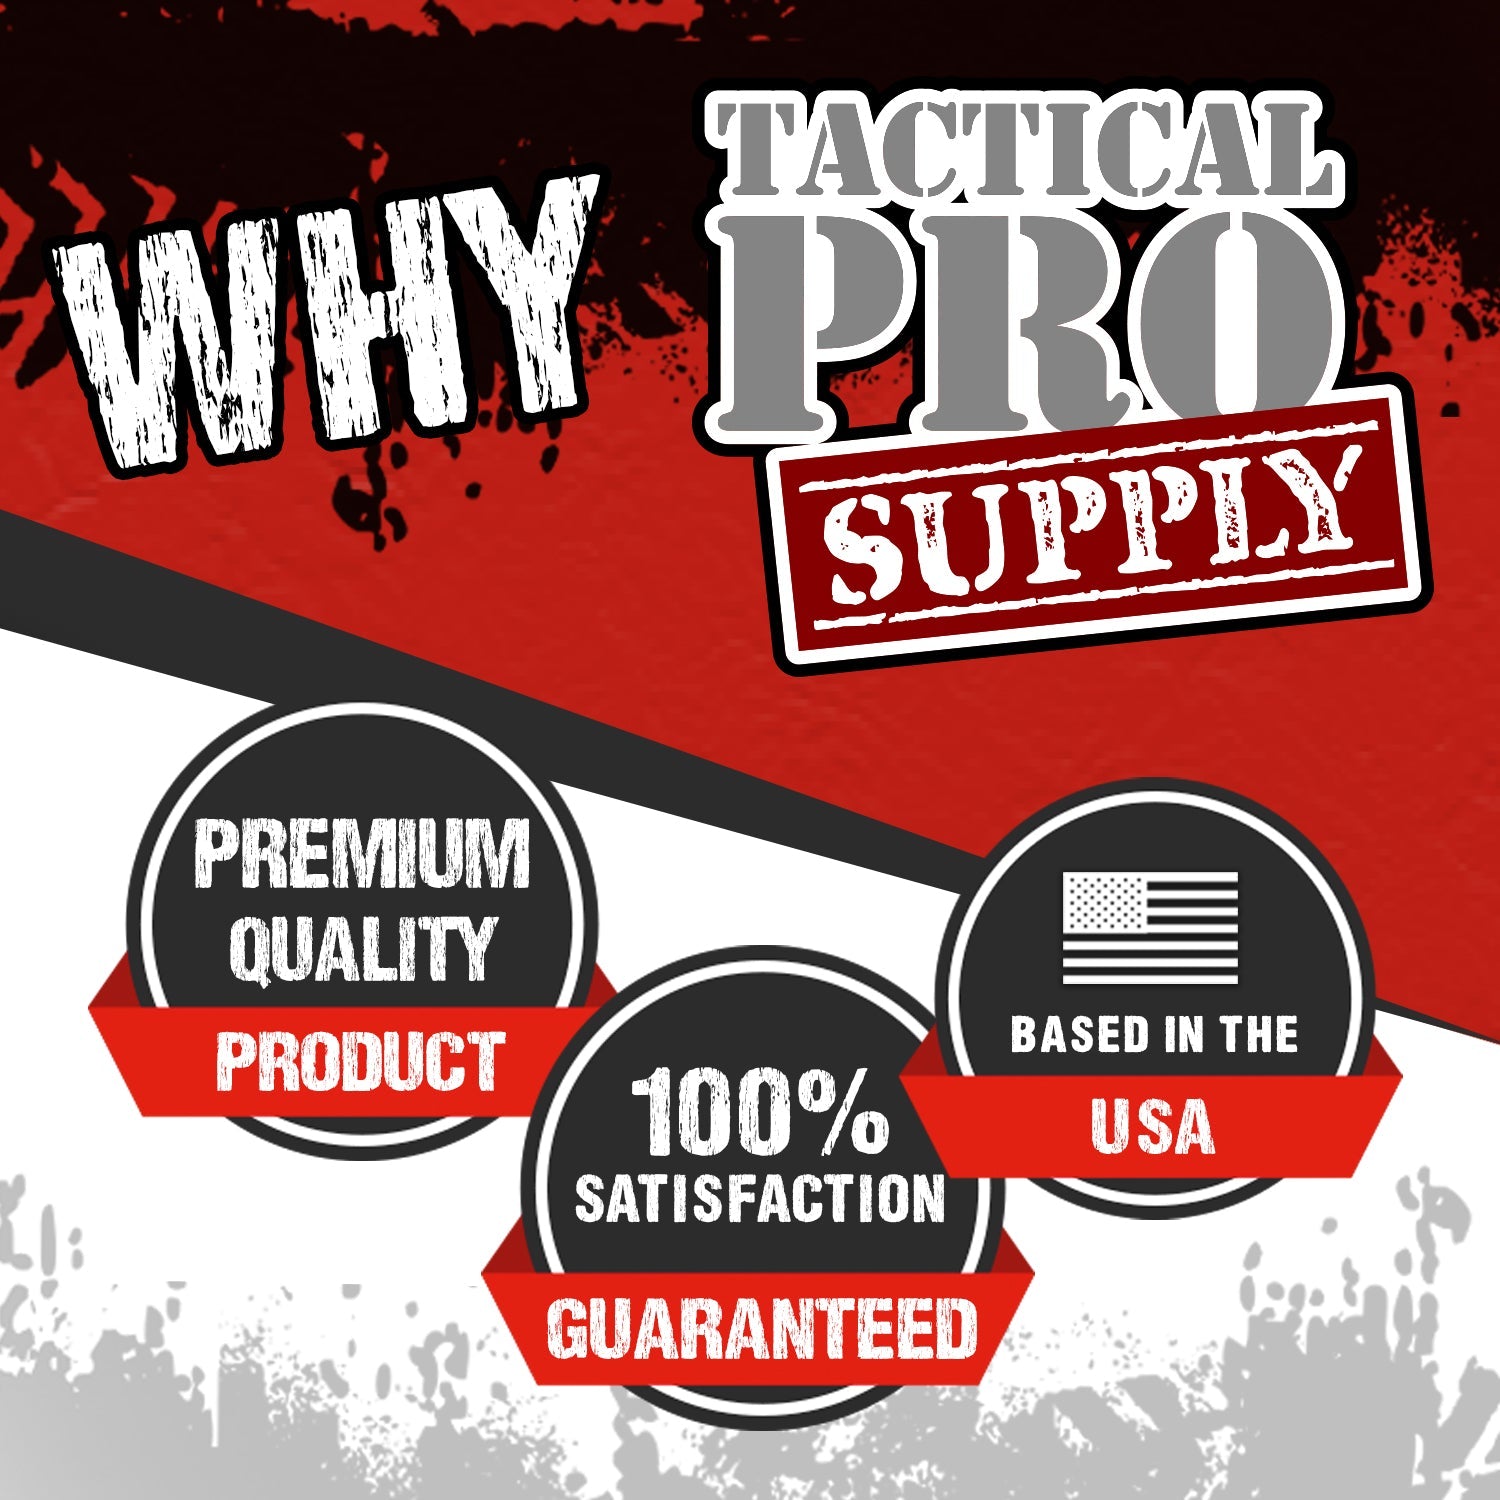 Super American - Tactical Pro Supply, LLC